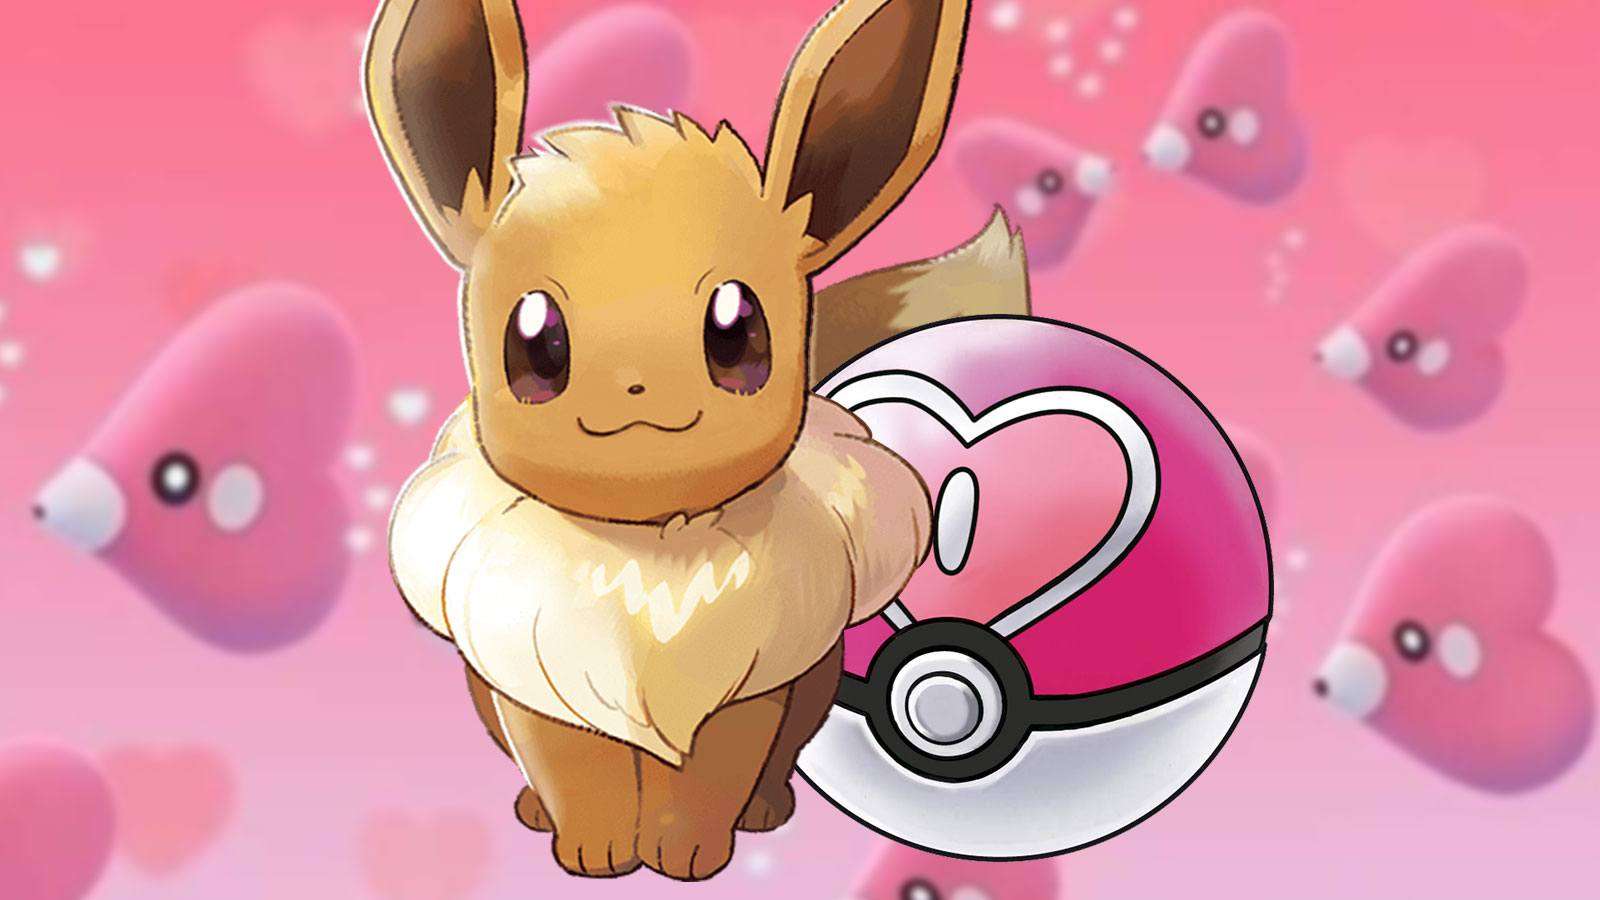 Idée de cadeau Pokémon pour la Saint Valentin